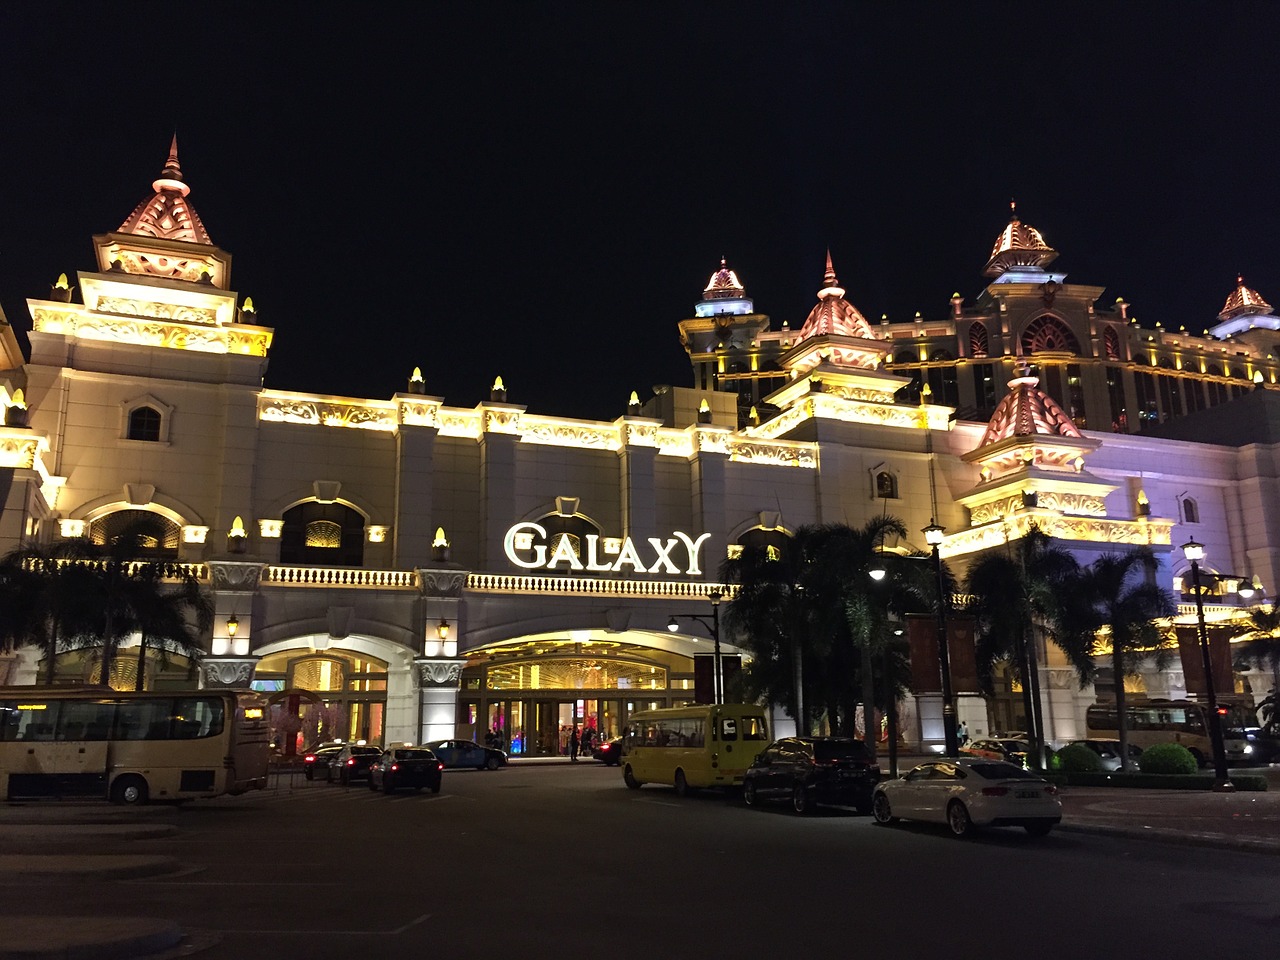 Macau - Galaxy